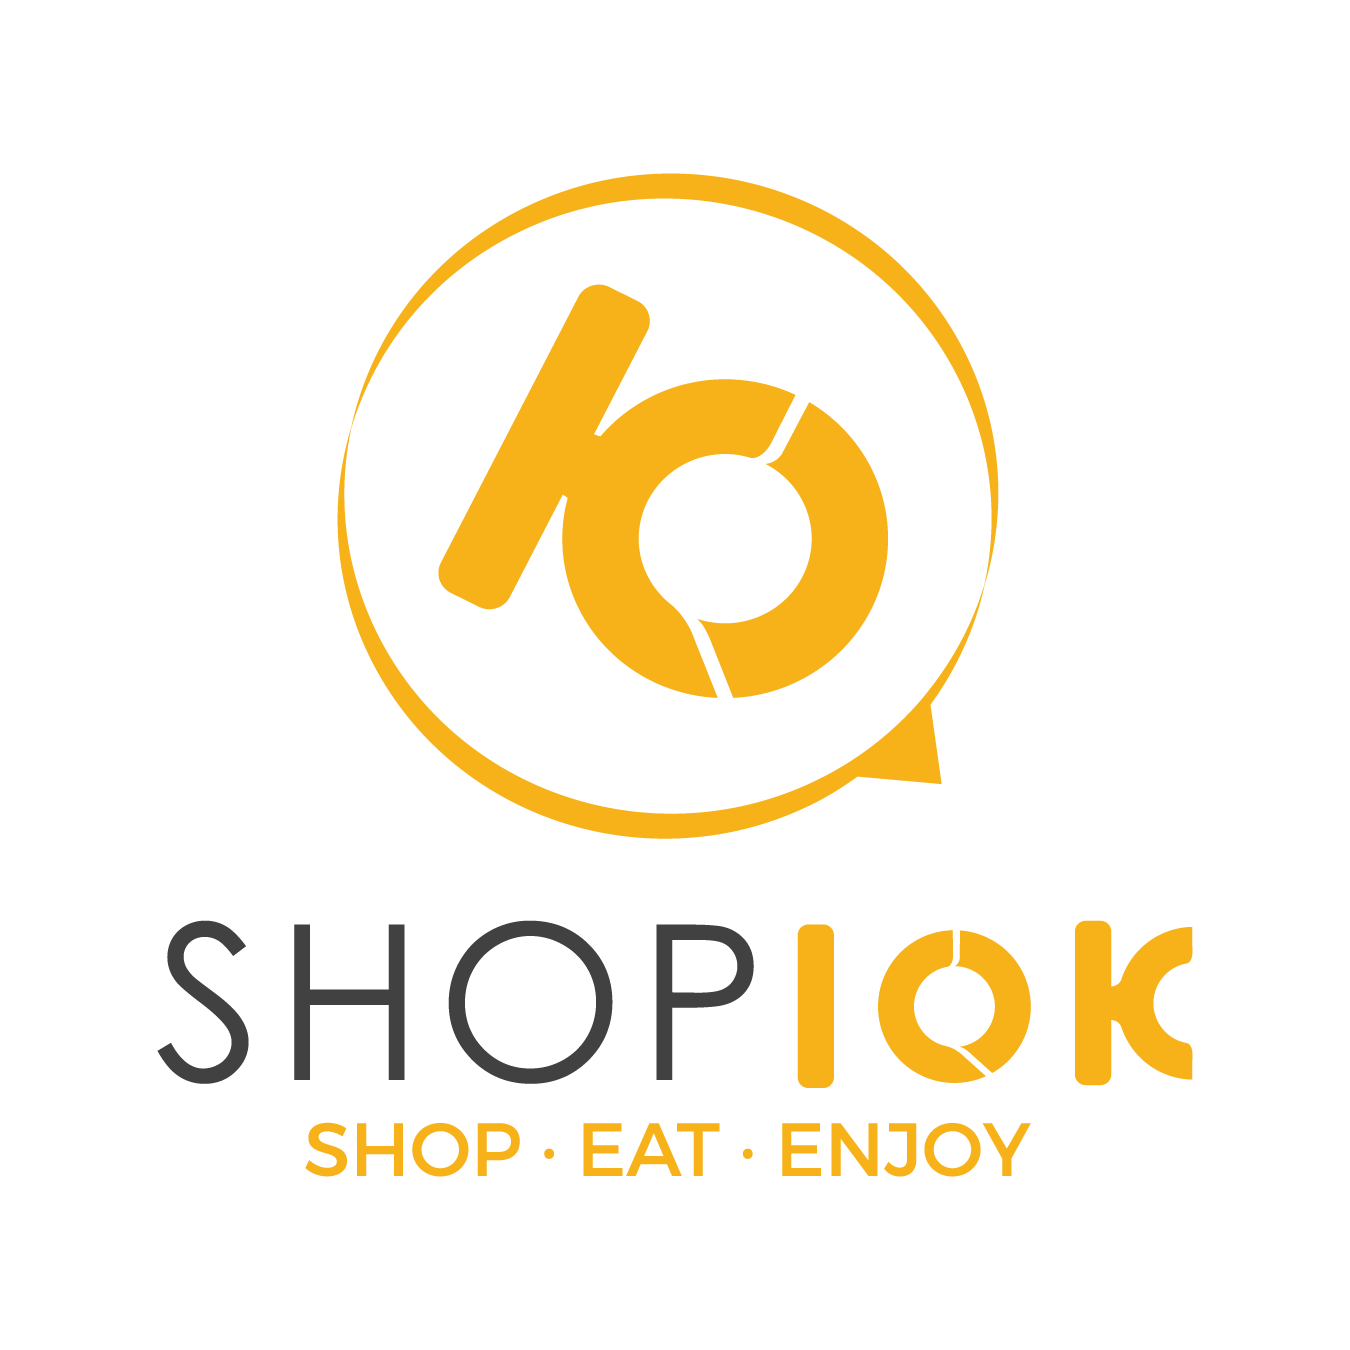 Shop10k